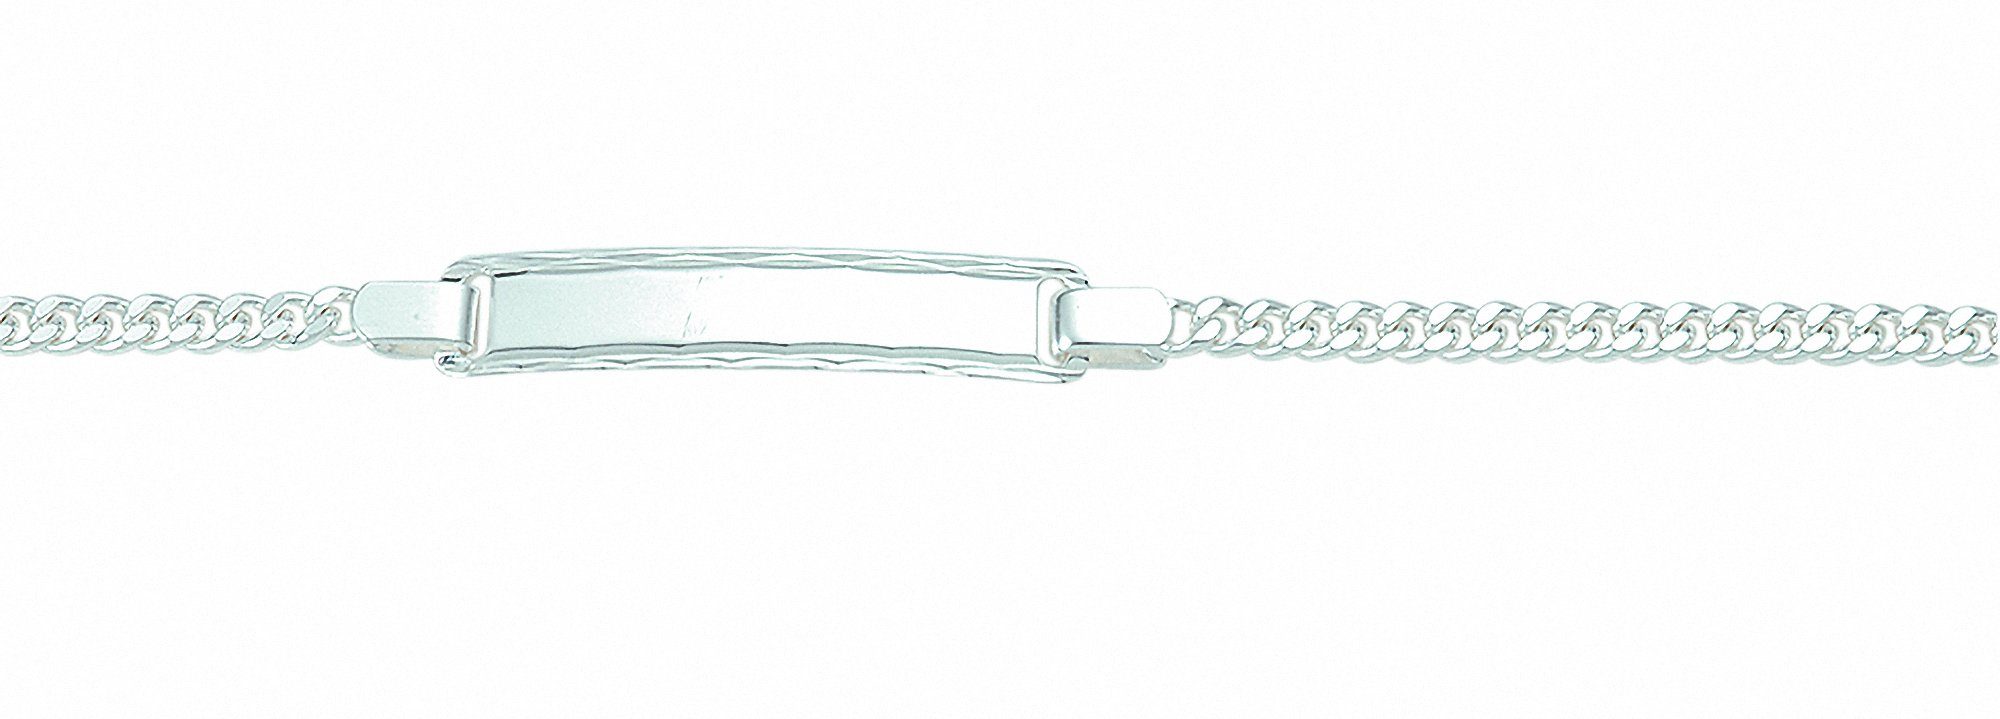 Damen Schmuck Adelia´s Silberarmband 925 Silber Flach Panzer Armband 14 cm, 925 Sterling Silber Flach Panzerkette Silberschmuck 